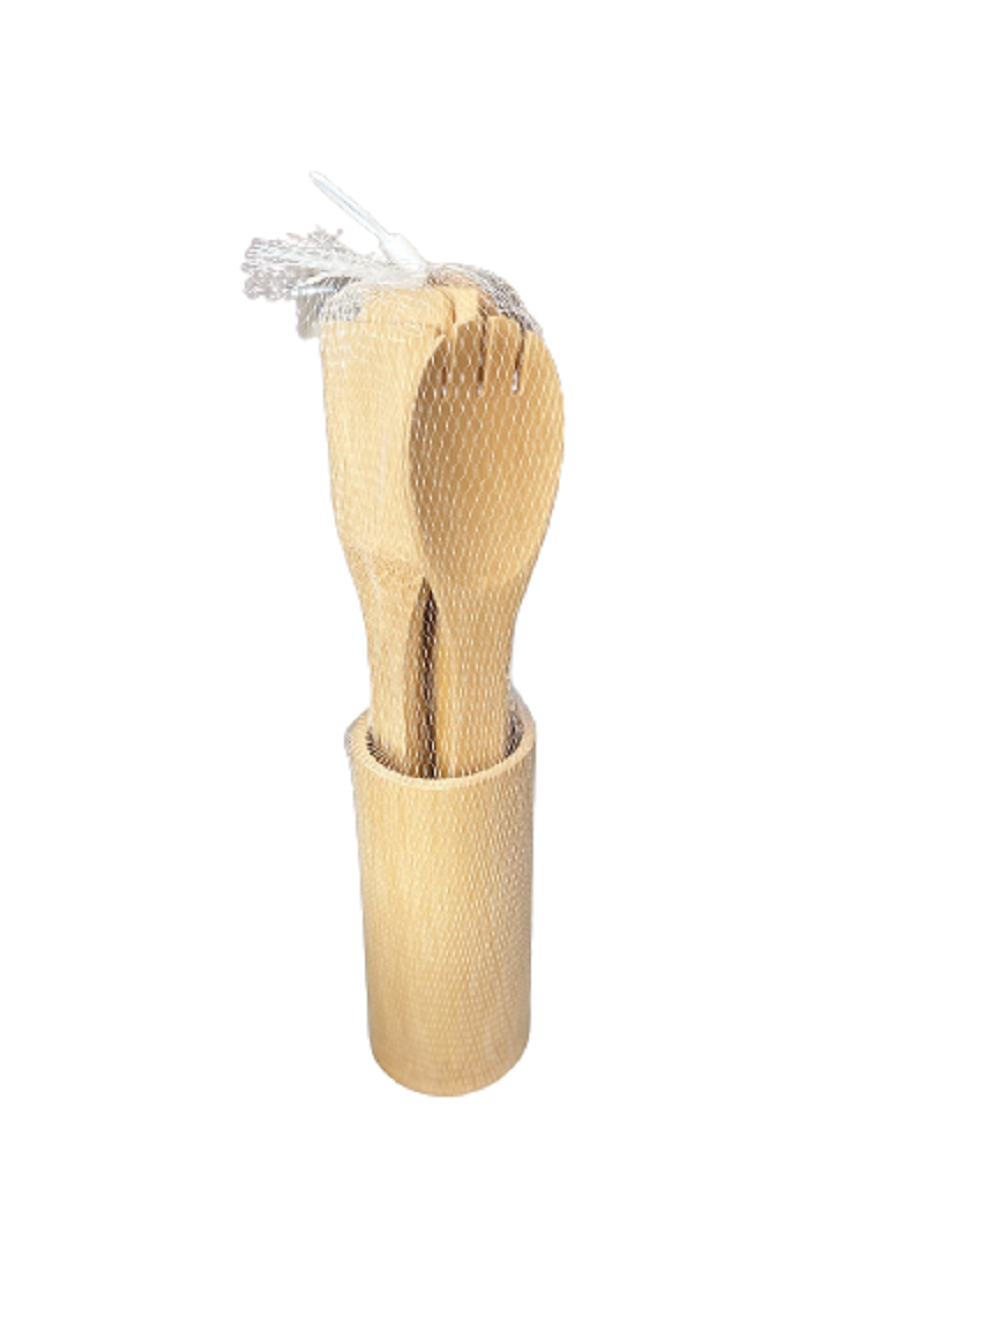  Juego de utensilios de cocina de bambú de 8 piezas